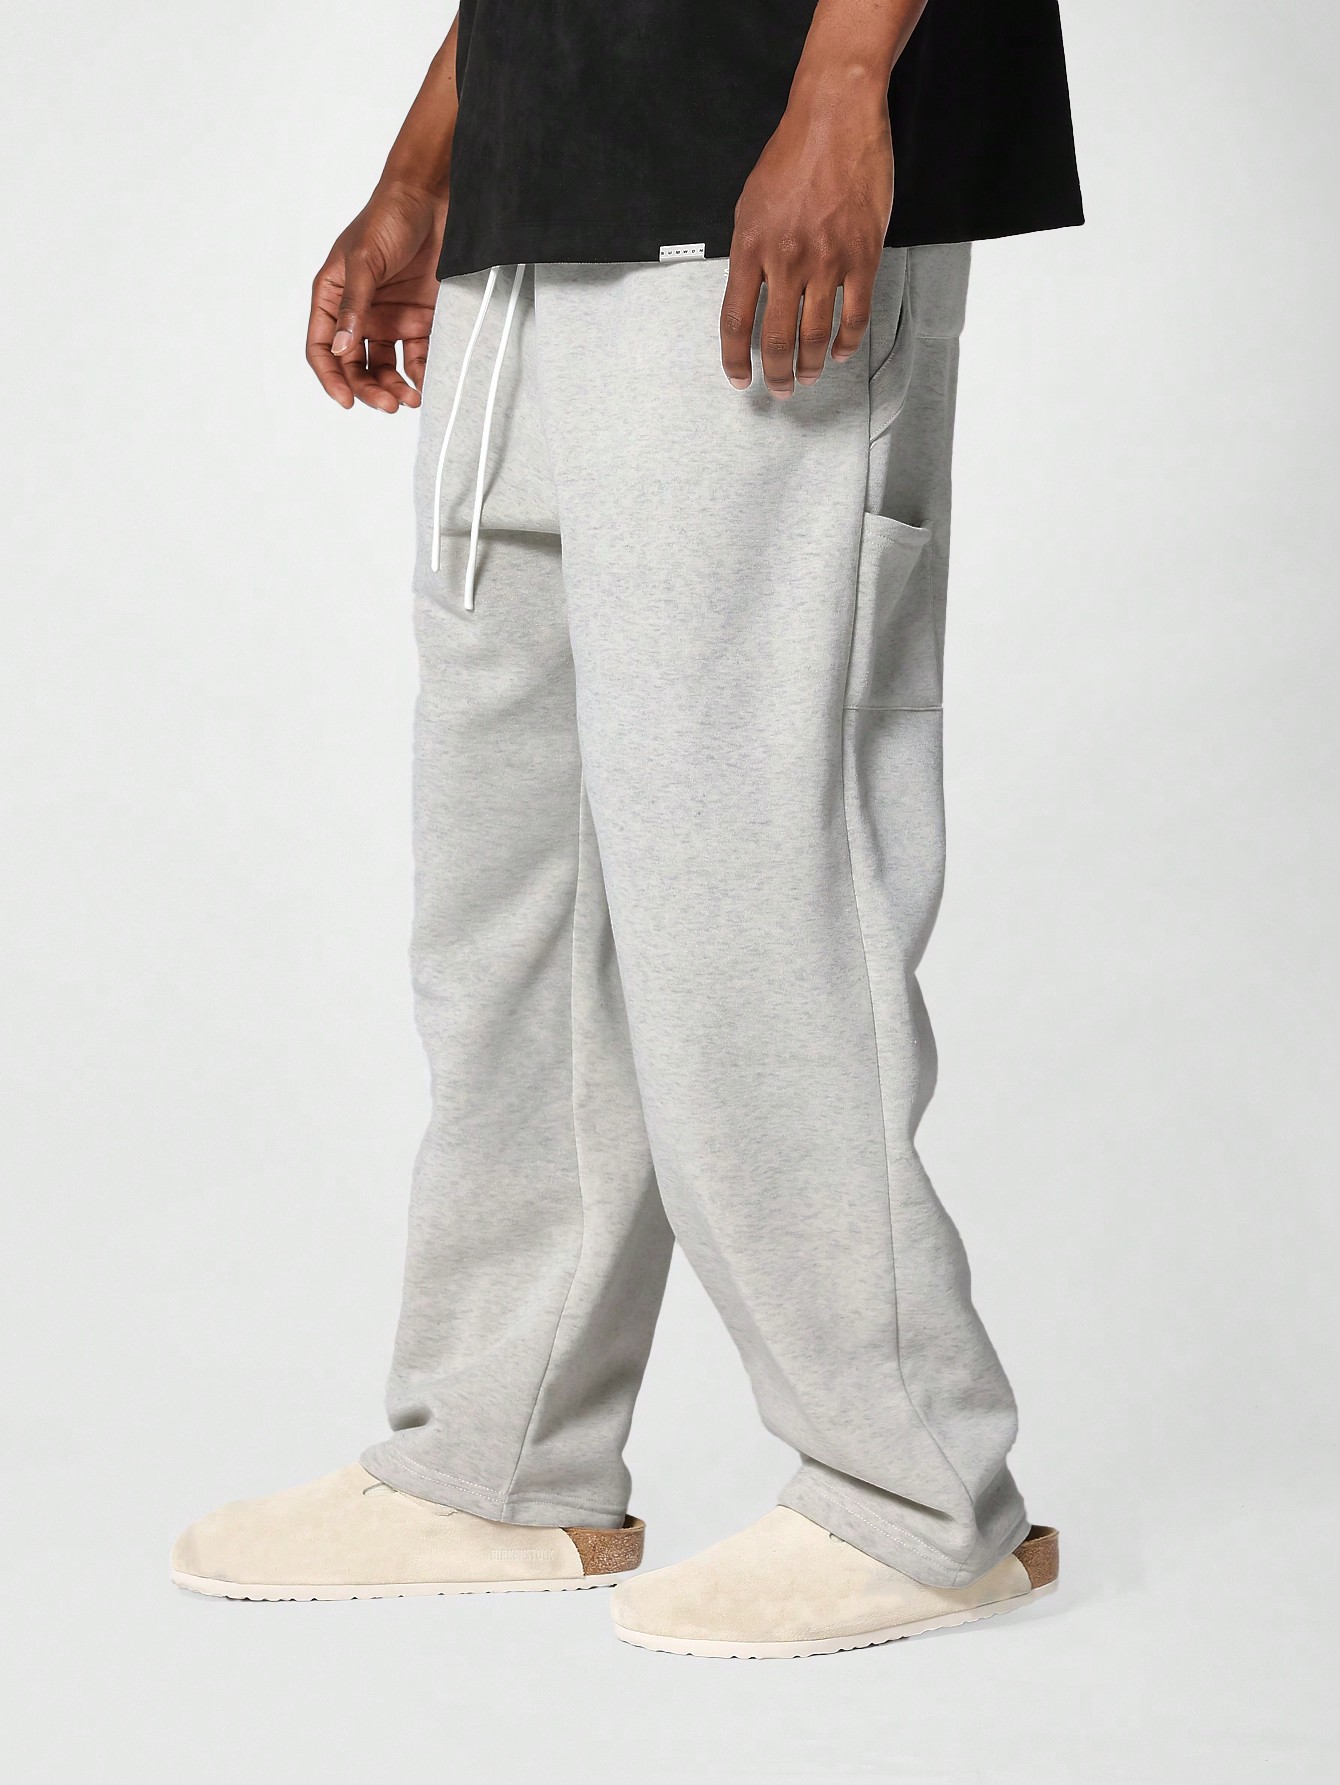 sumwon нейлоновые брюки для костюма мокко браун Джоггеры SUMWON с заниженным шаговым швом, светло-серый